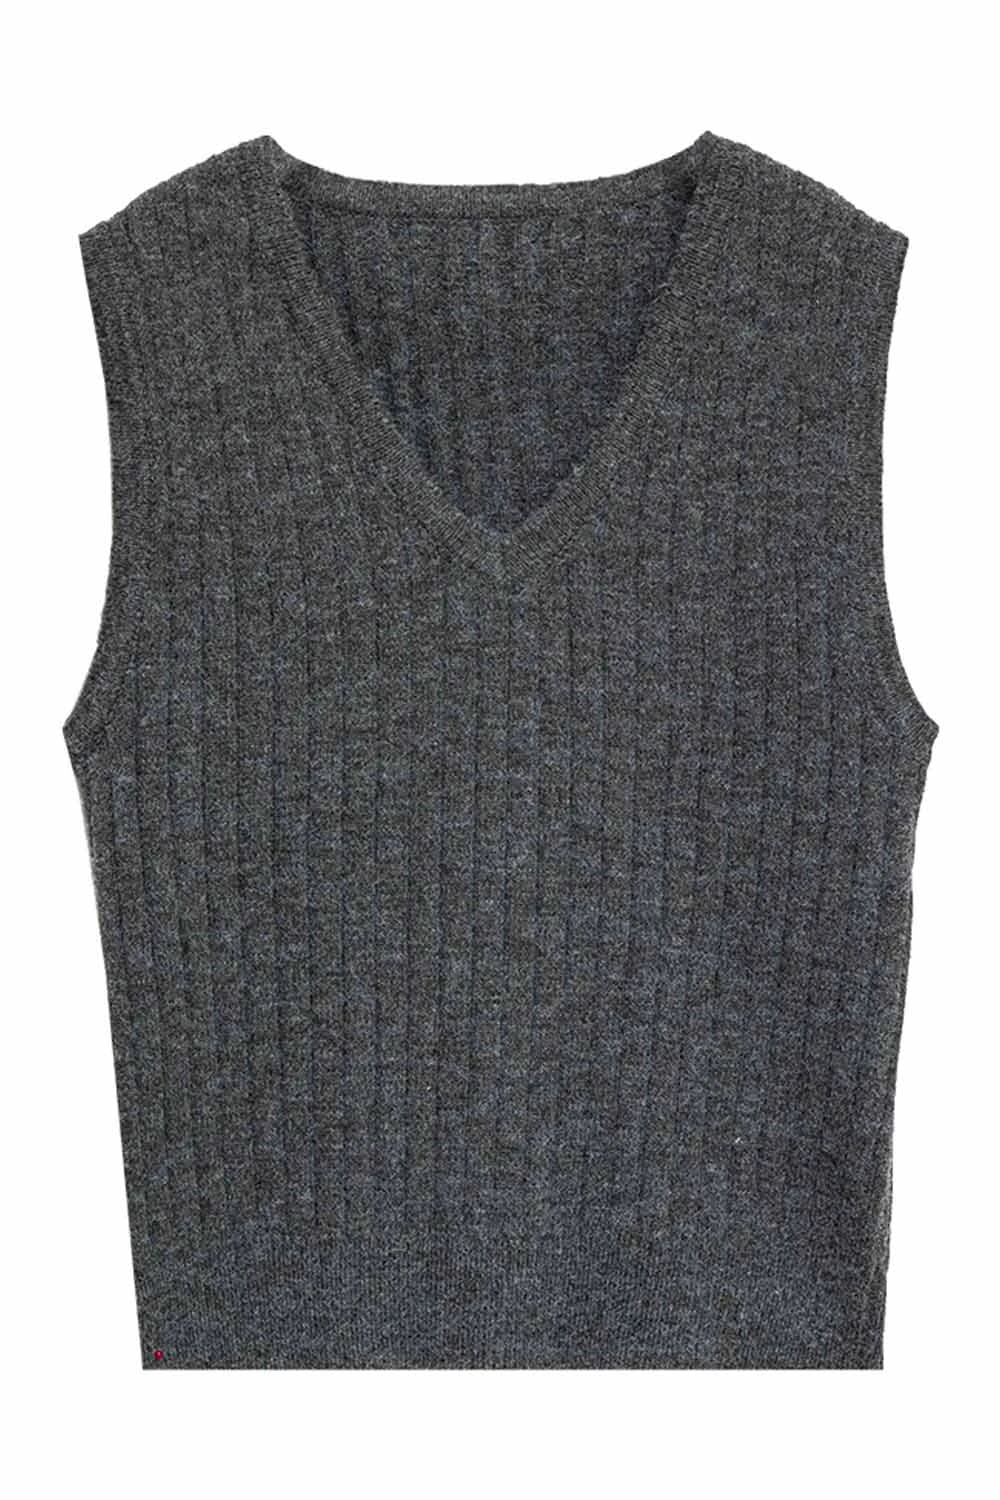 Áo vest dệt kim cổ chữ V không tay màu xám than